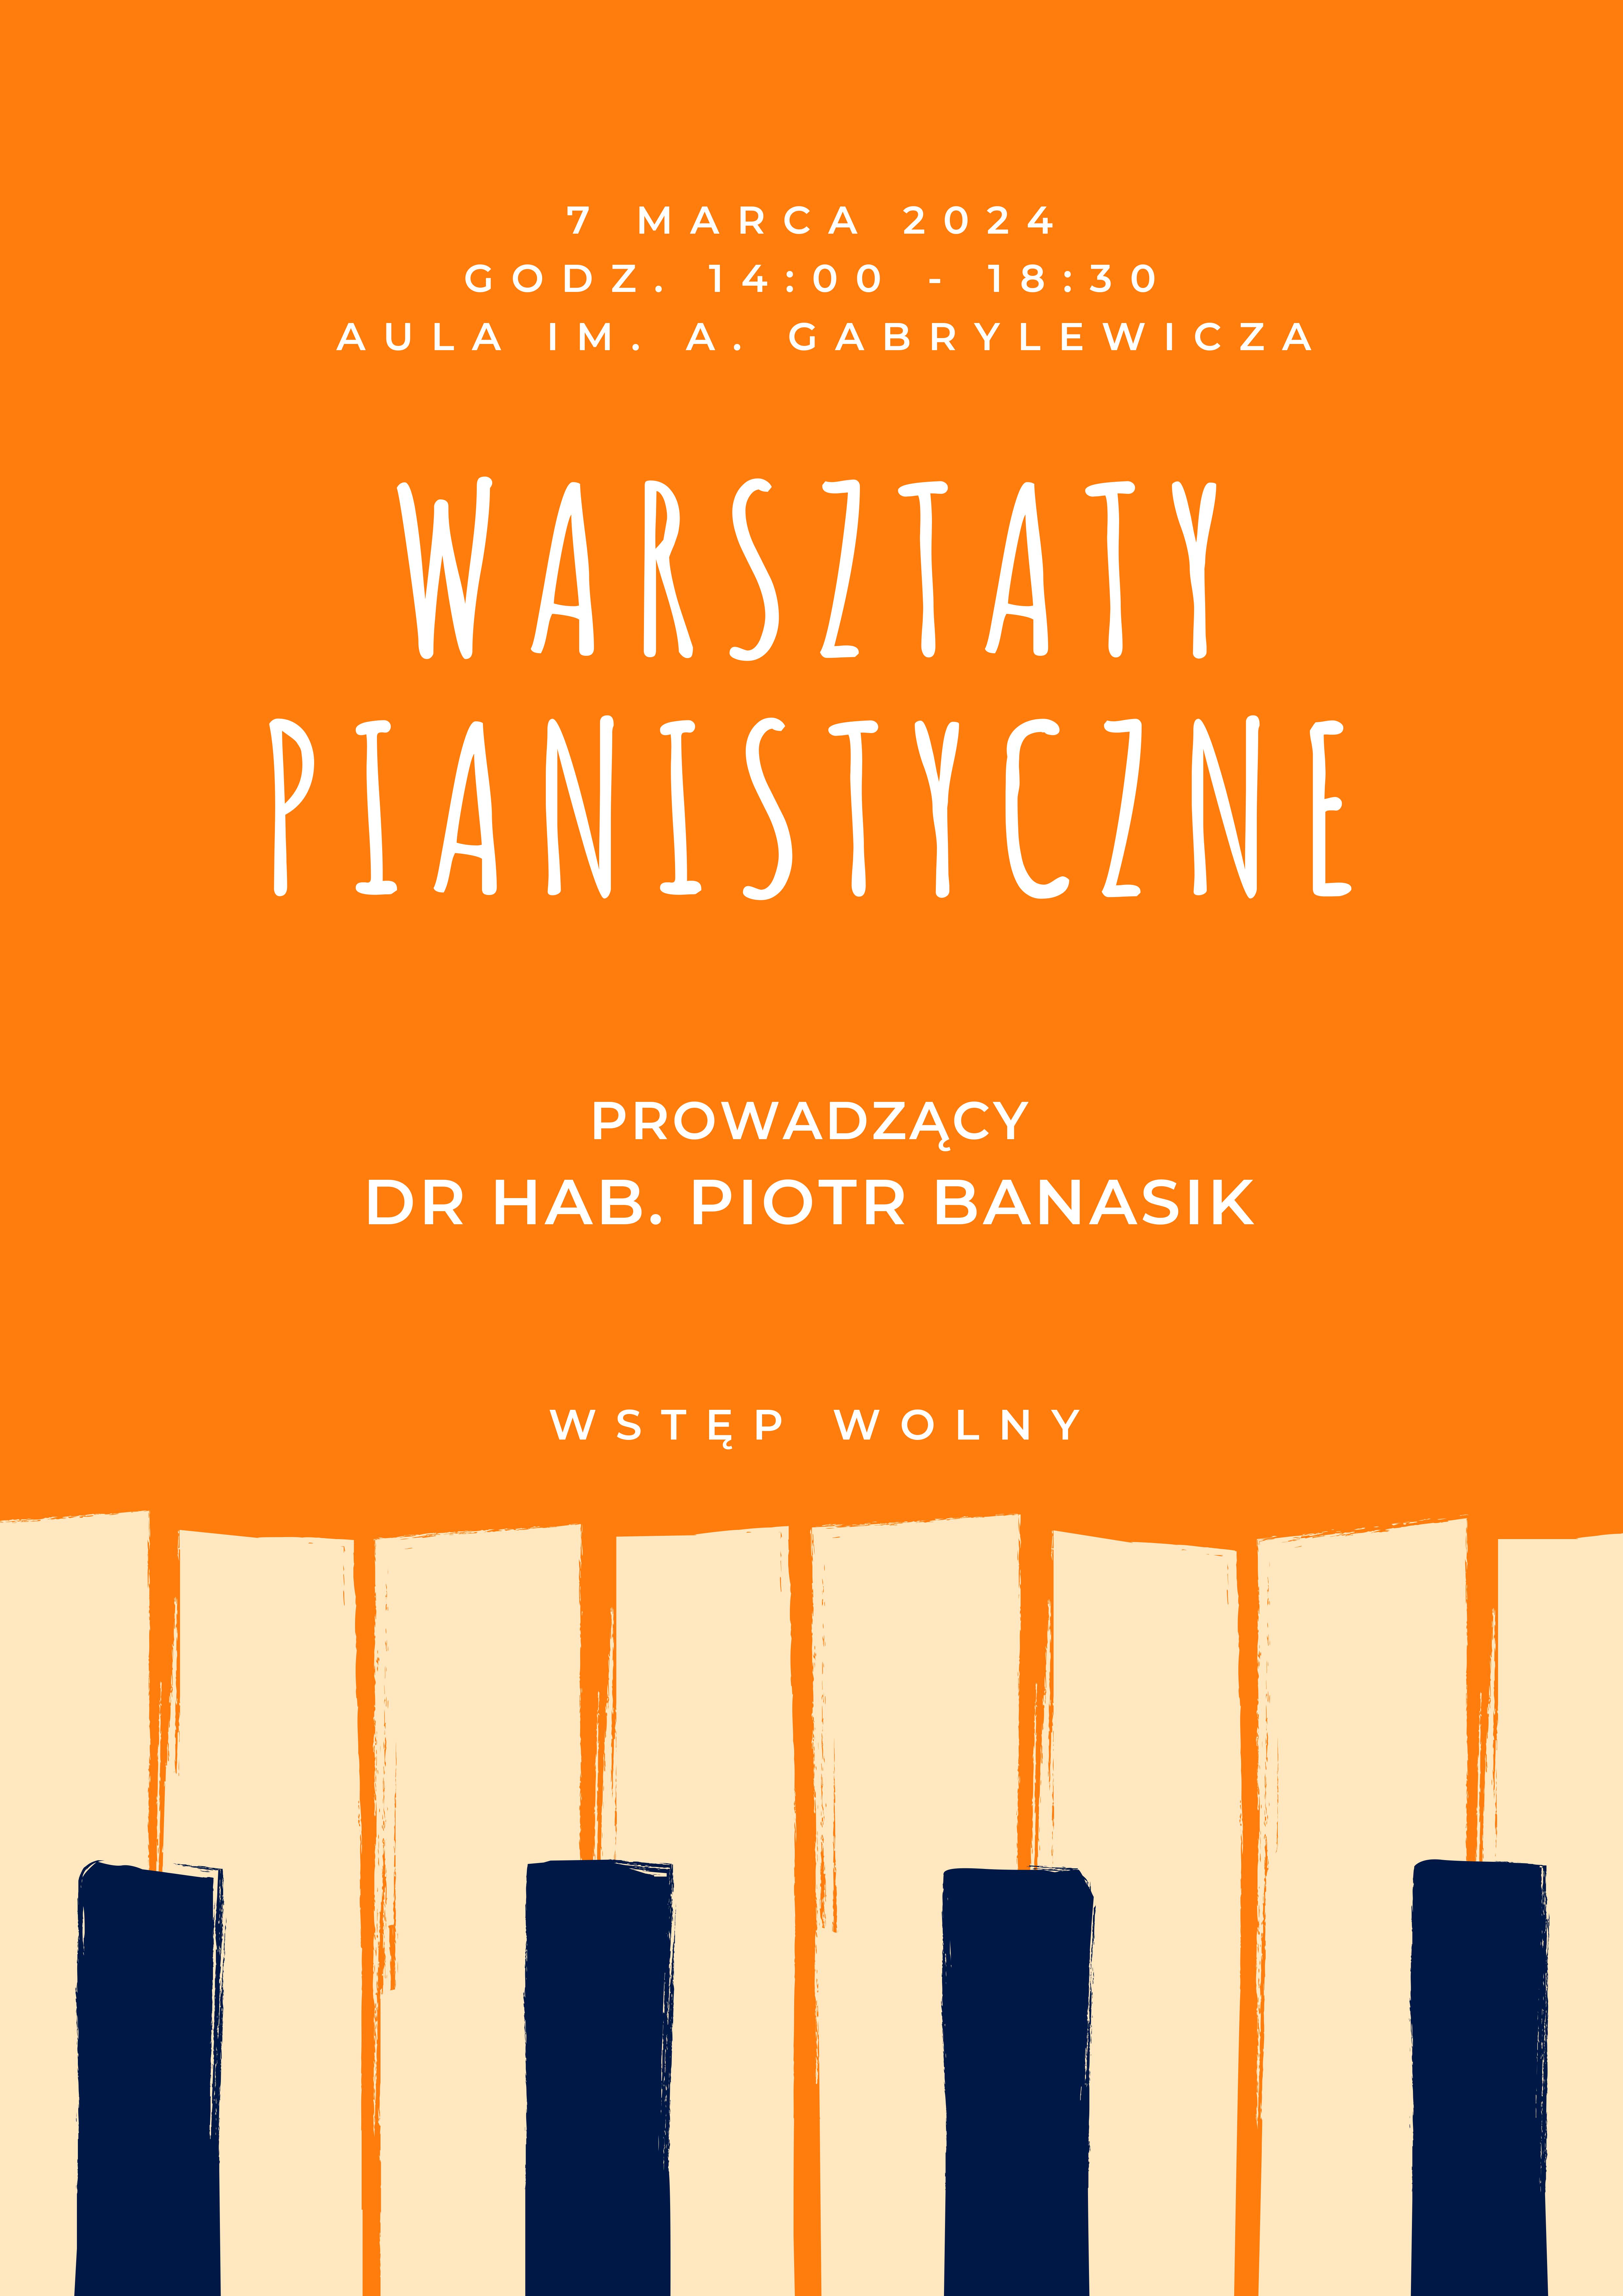 Plakat w kolorze pomarańczowym, przedstawiający klawisze fortepianu, ze szczegółową informacją dotyczącą warsztatów pianistycznych 